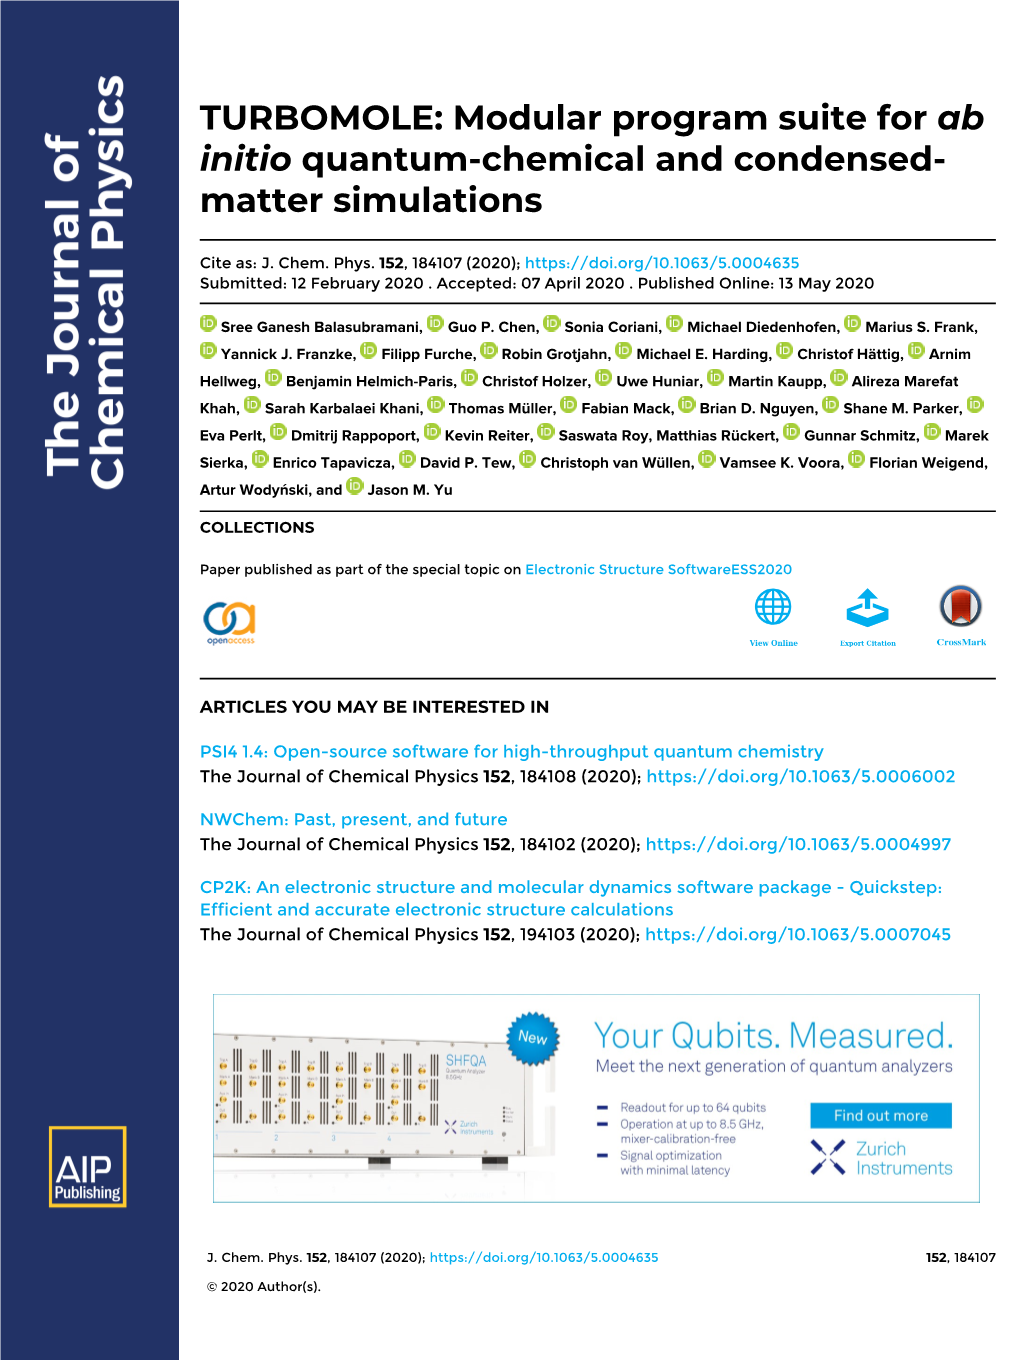 TURBOMOLE: Modular Program Suite for Ab Initio Quantum-Chemical and Condensed- Matter Simulations